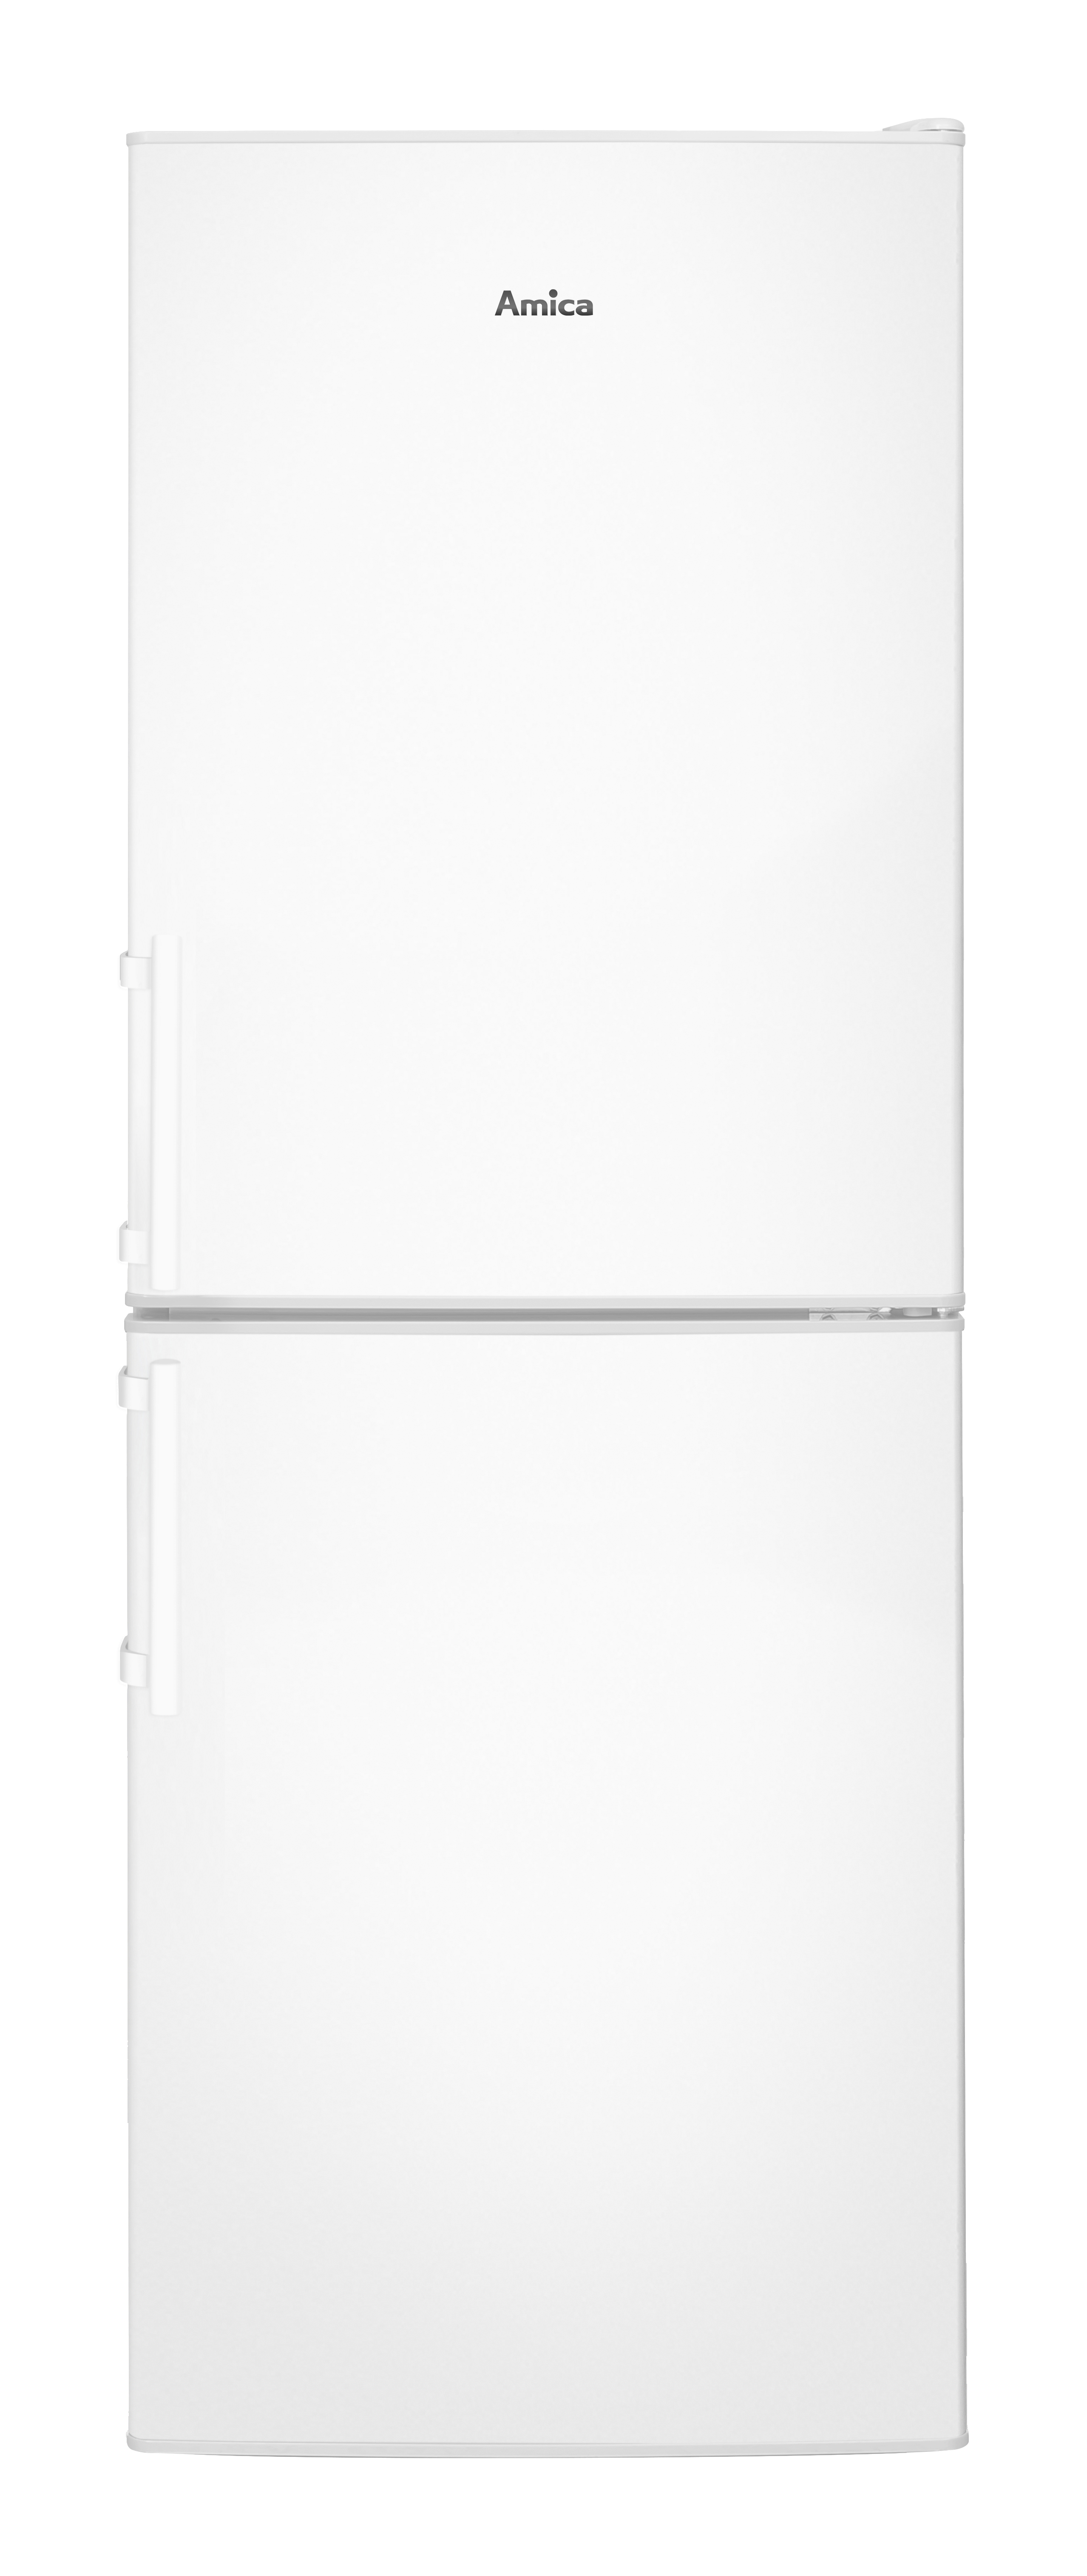 AMICA KGC 384 110 W (C, hoch, Weiß) Kühlgefrierkombination kWh, 118 1480 mm